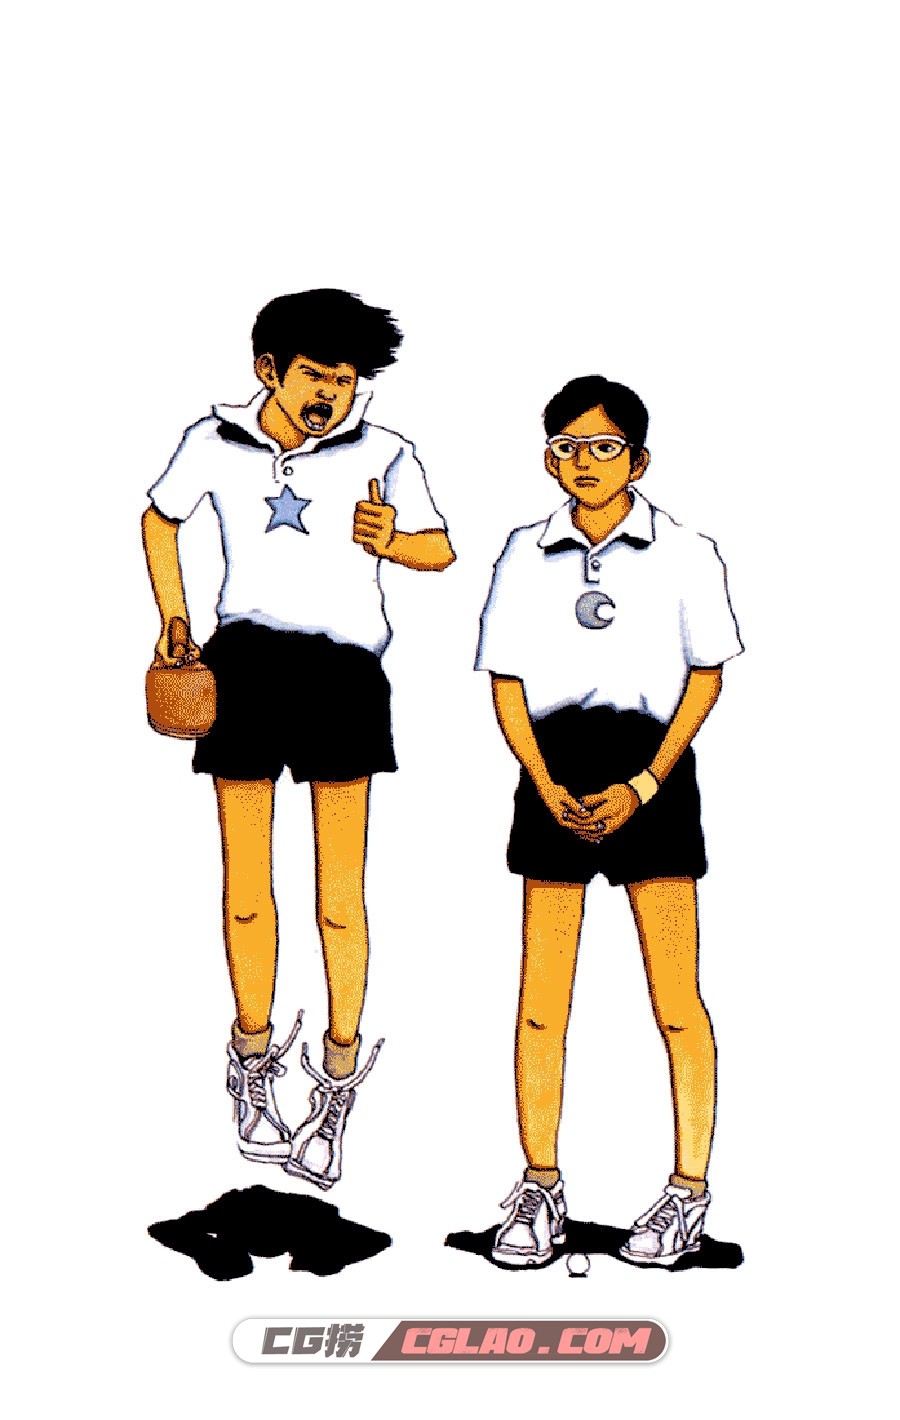 乒乓pingpong 松本大洋 1-5卷 漫画全集完结下载 百度网盘,PingPong_v01c01p008.jpg